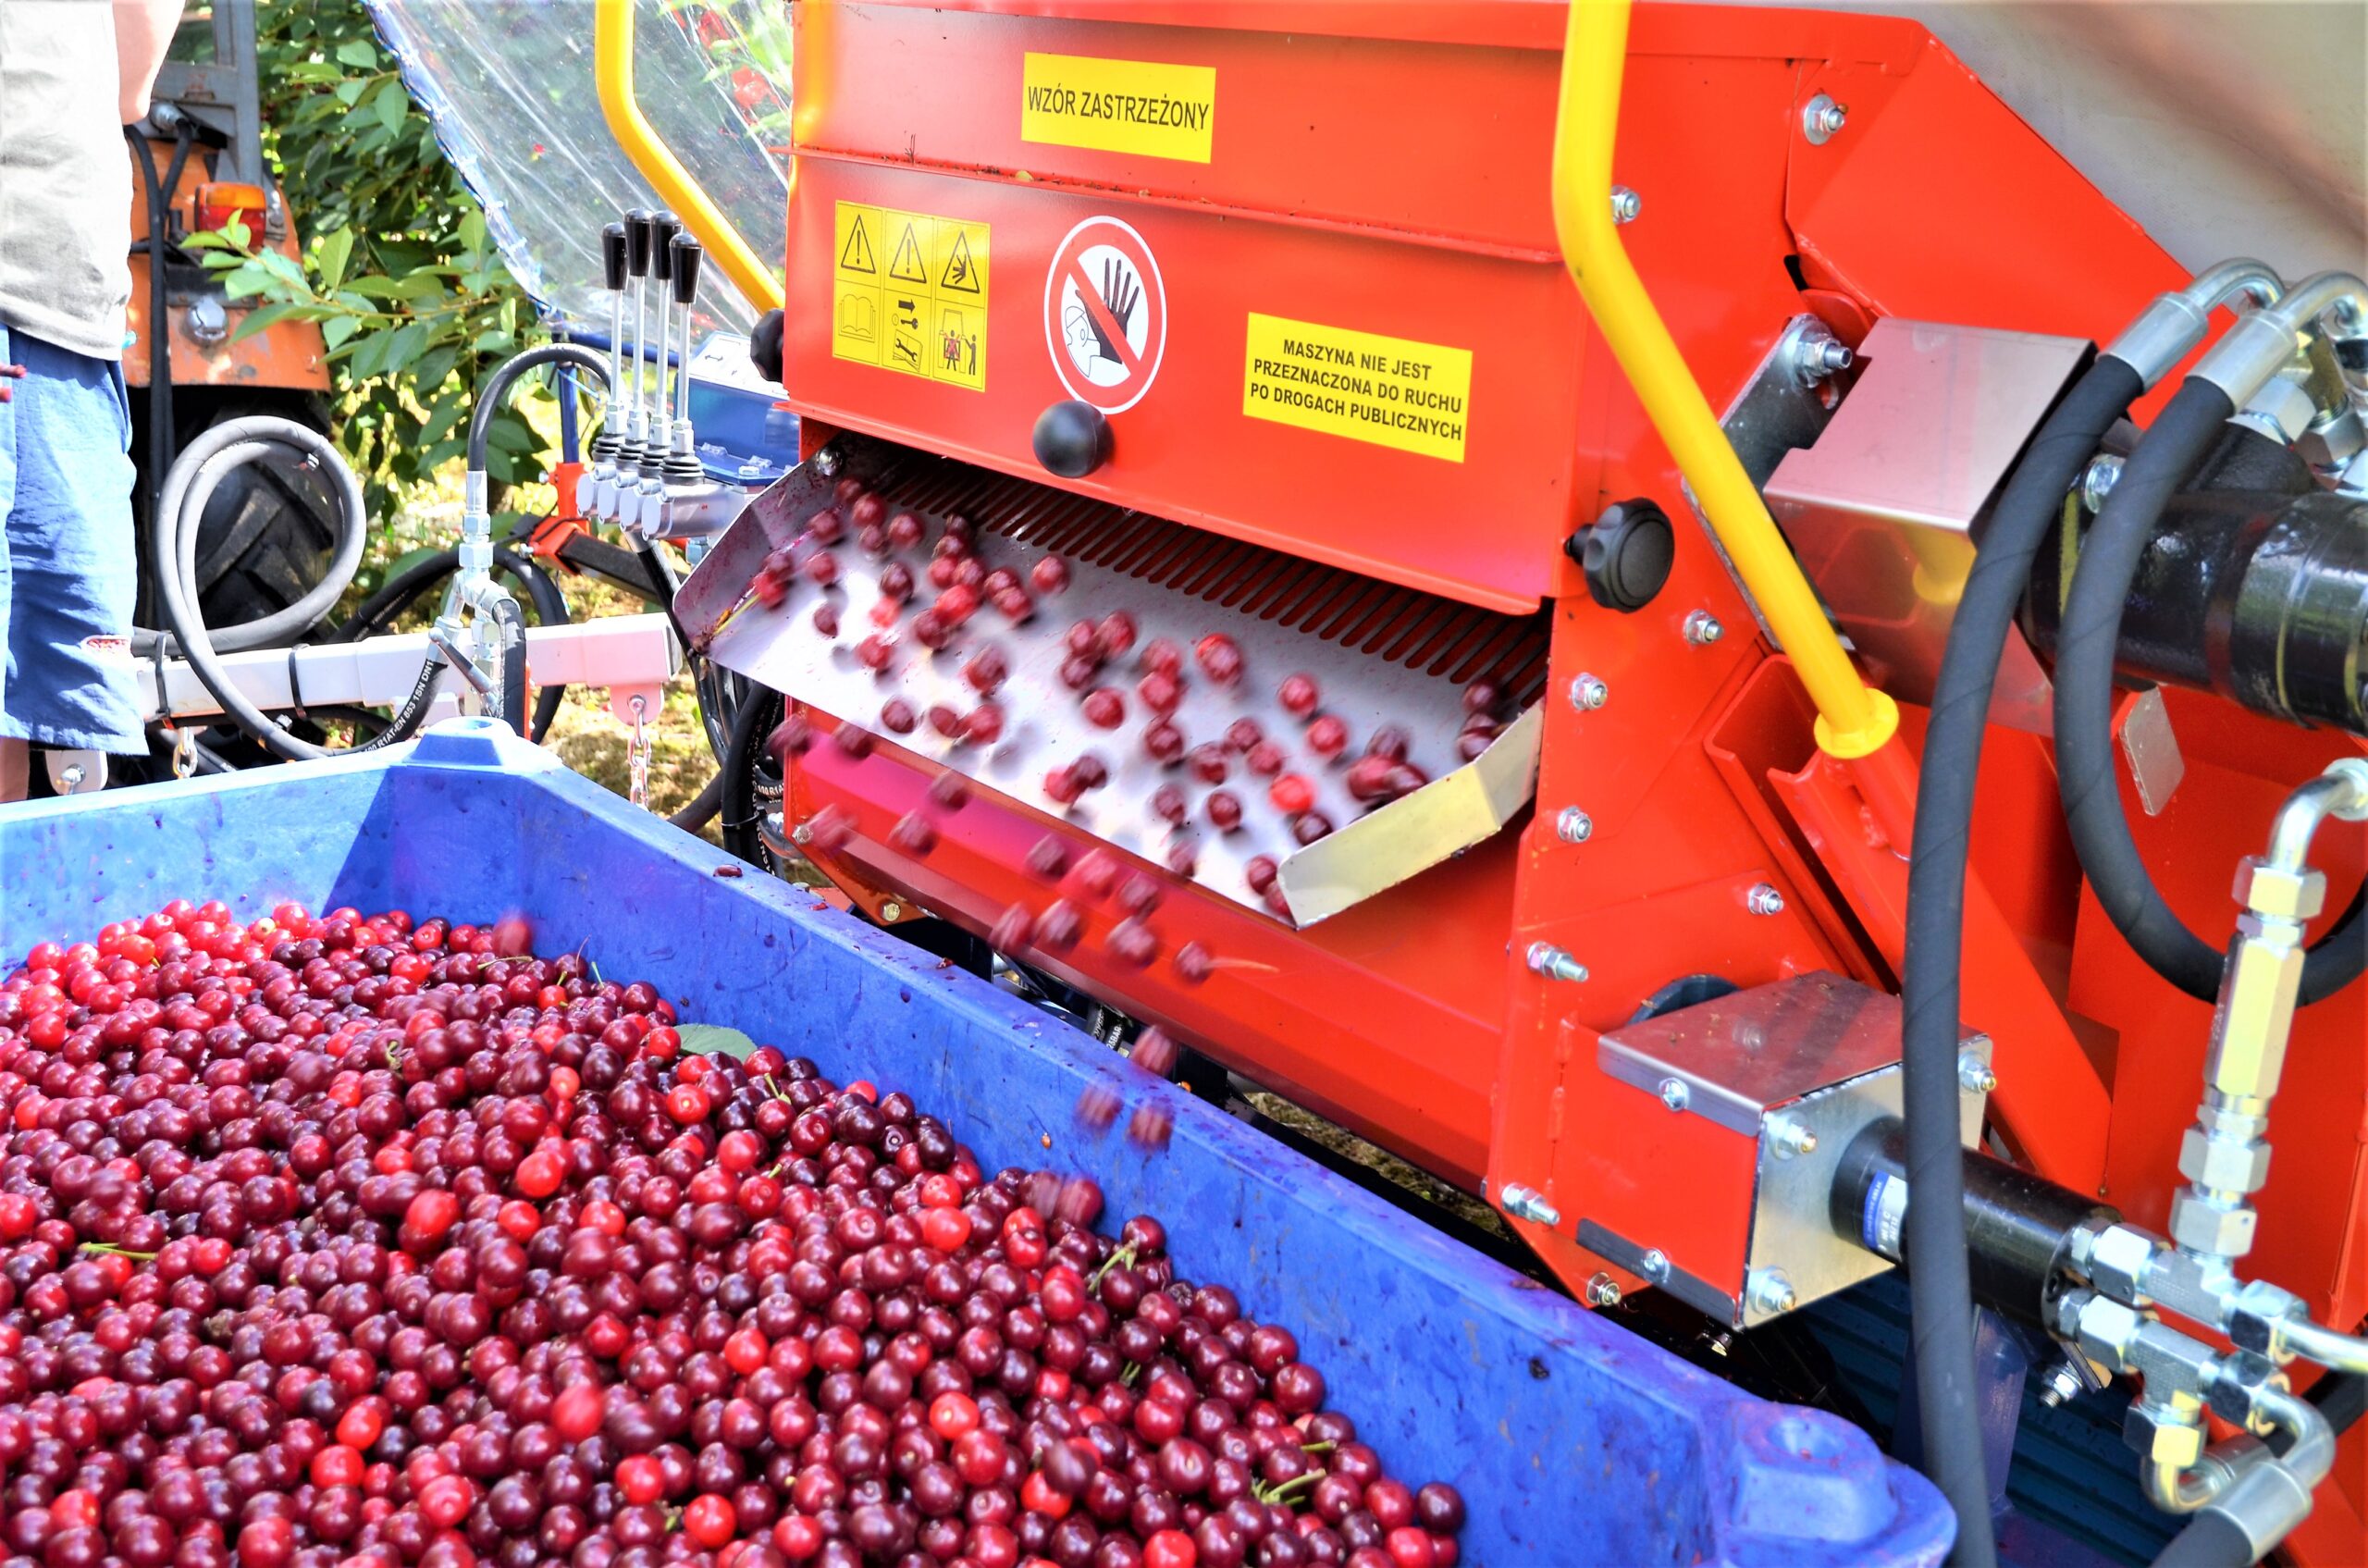 Le vibreur arboricole GACEK est conçu pour la récolte des cerises, prunes, noisettes et autres.